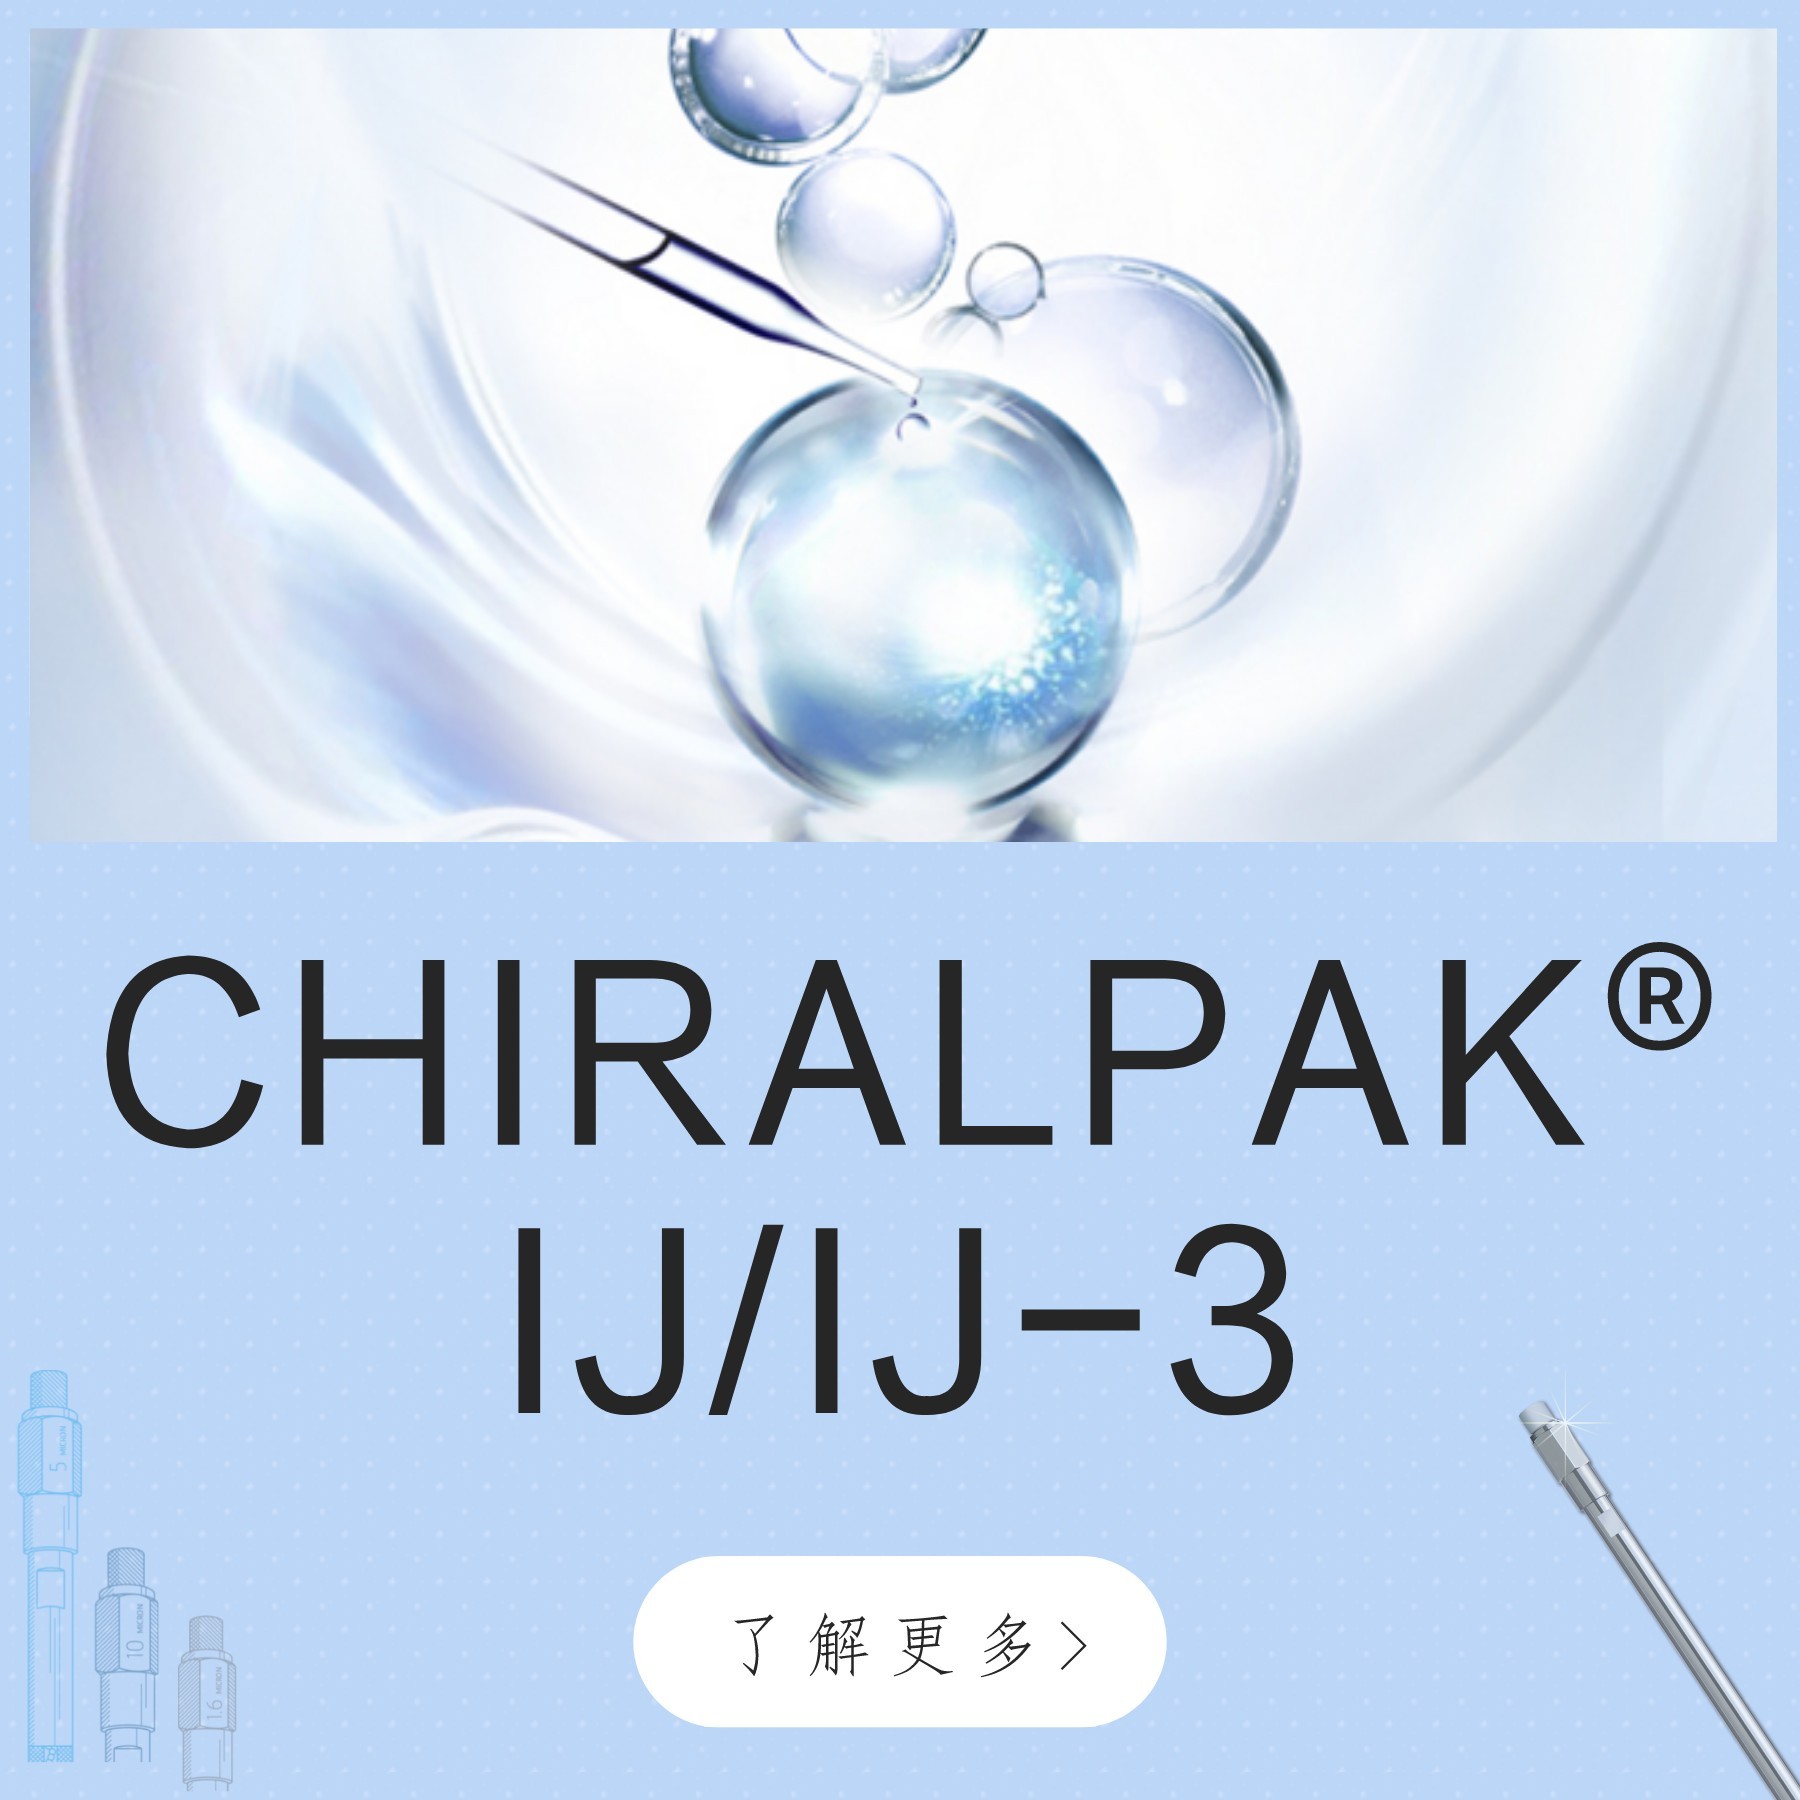 CHIRALPAK&reg; IJ/IJ-3